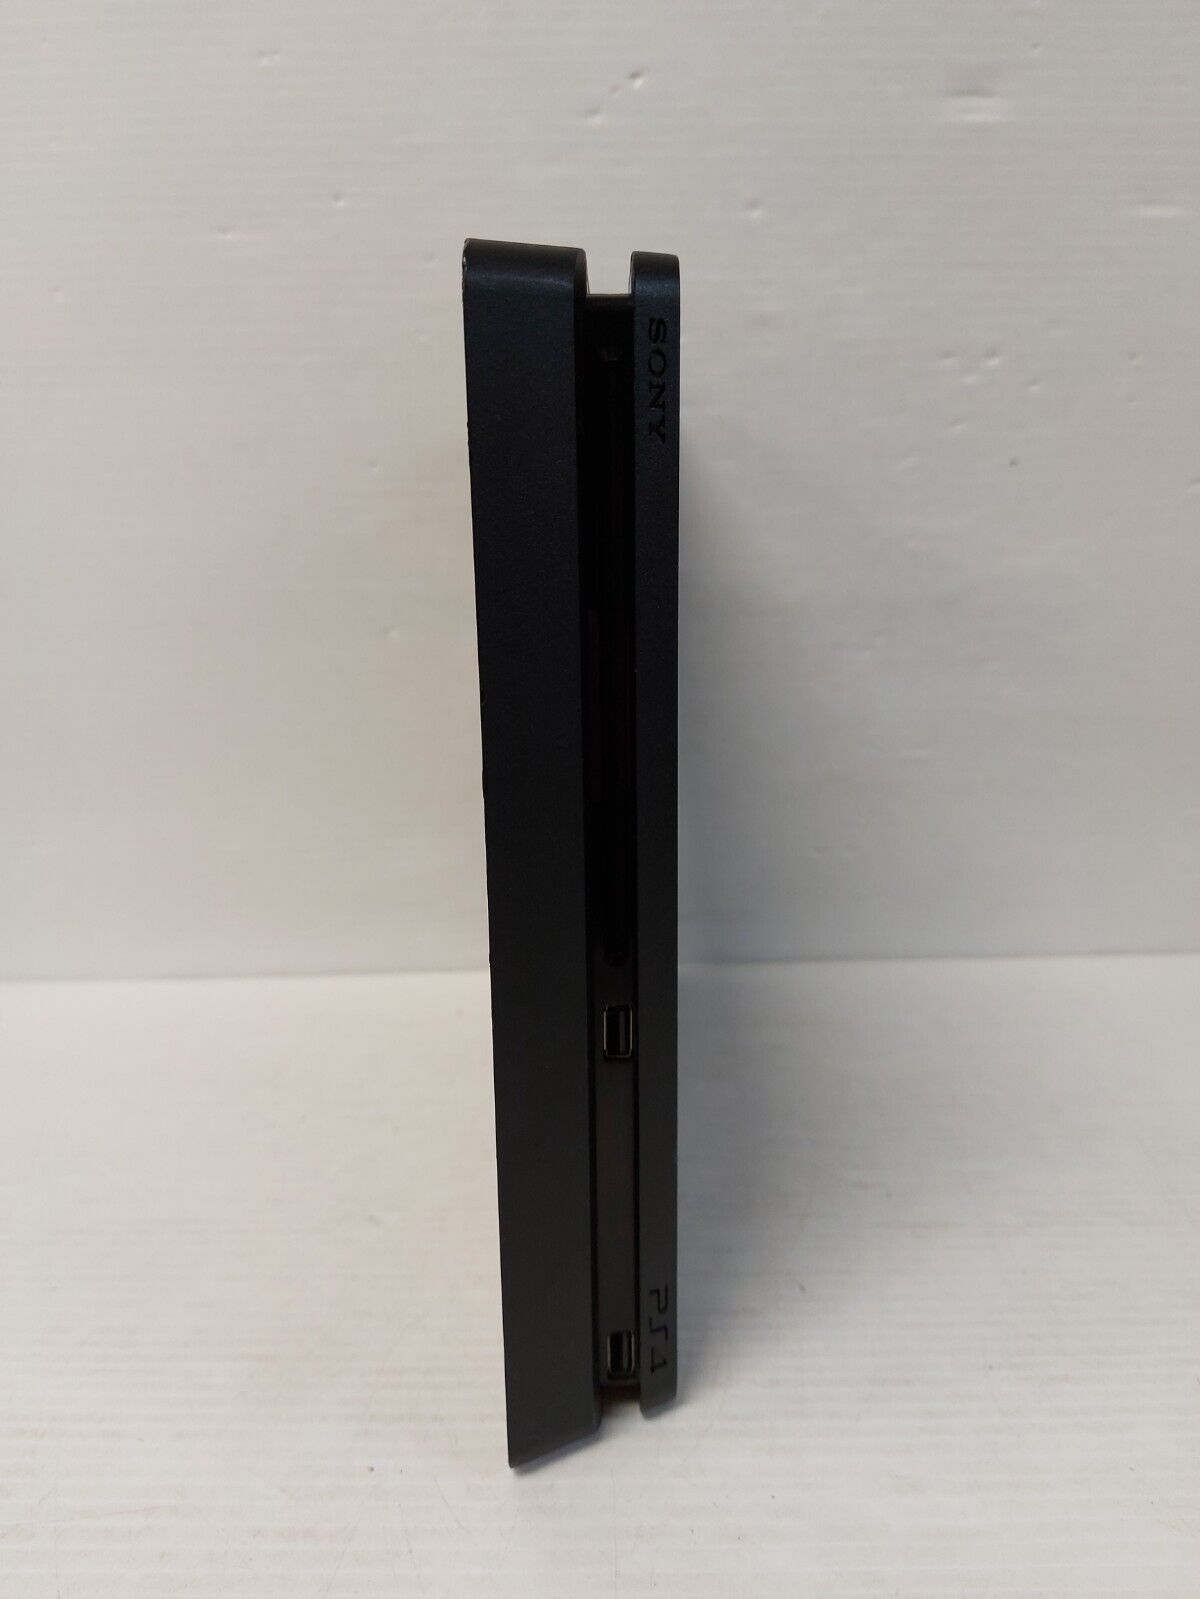 (N76932-1) Sony CUH-2215B PlayStation 4 Slim 1TB